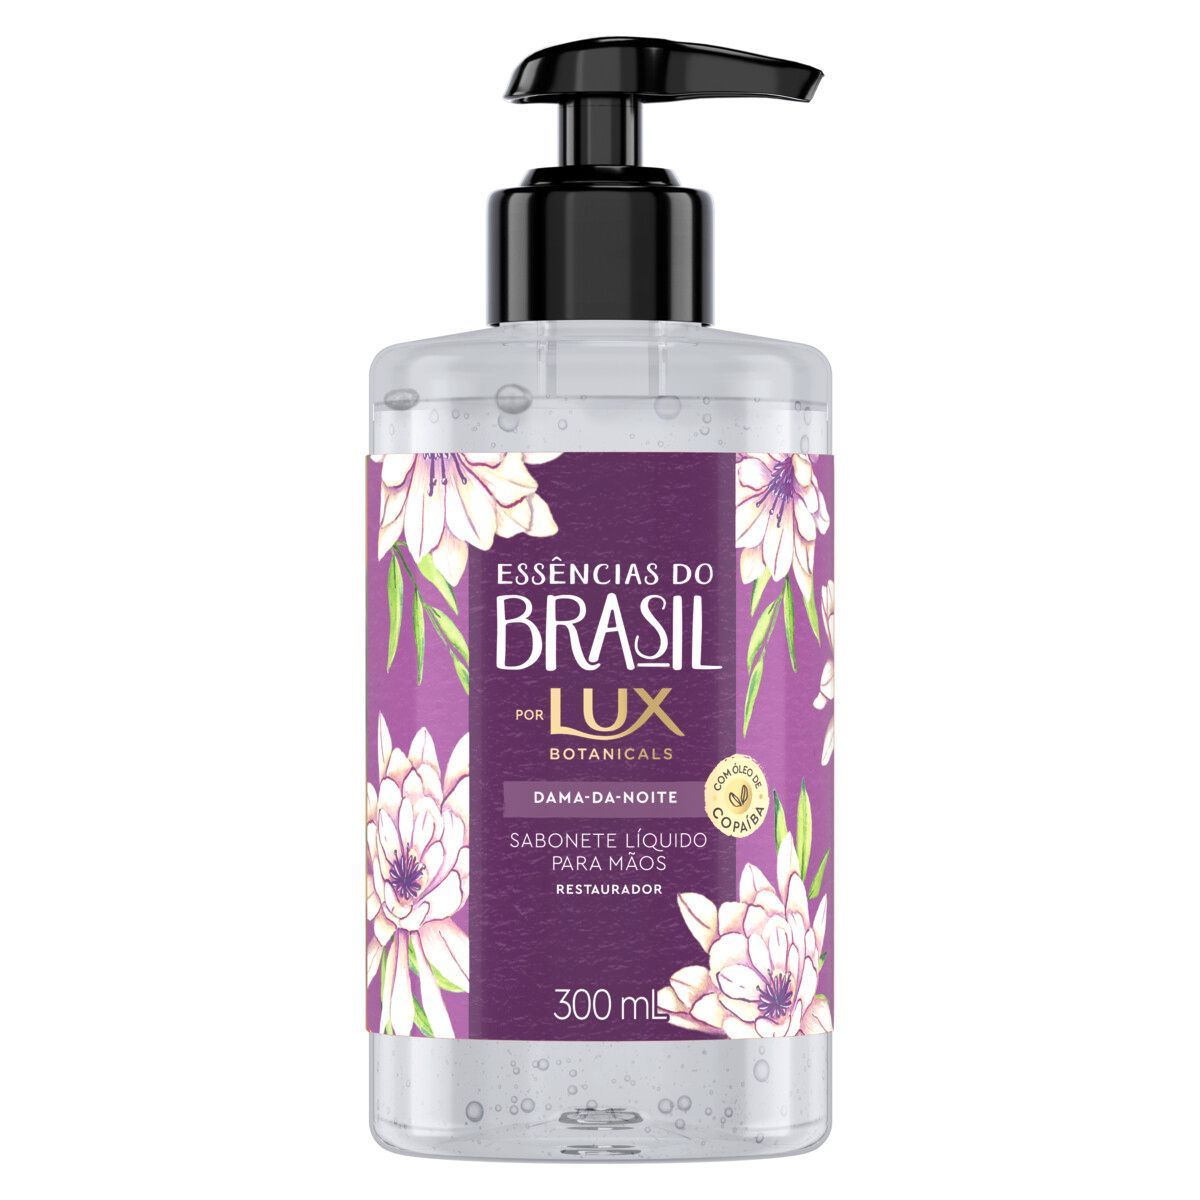 Sabonete Líquido Lux para as mãos Flor de Cerejeira 500ml Refil